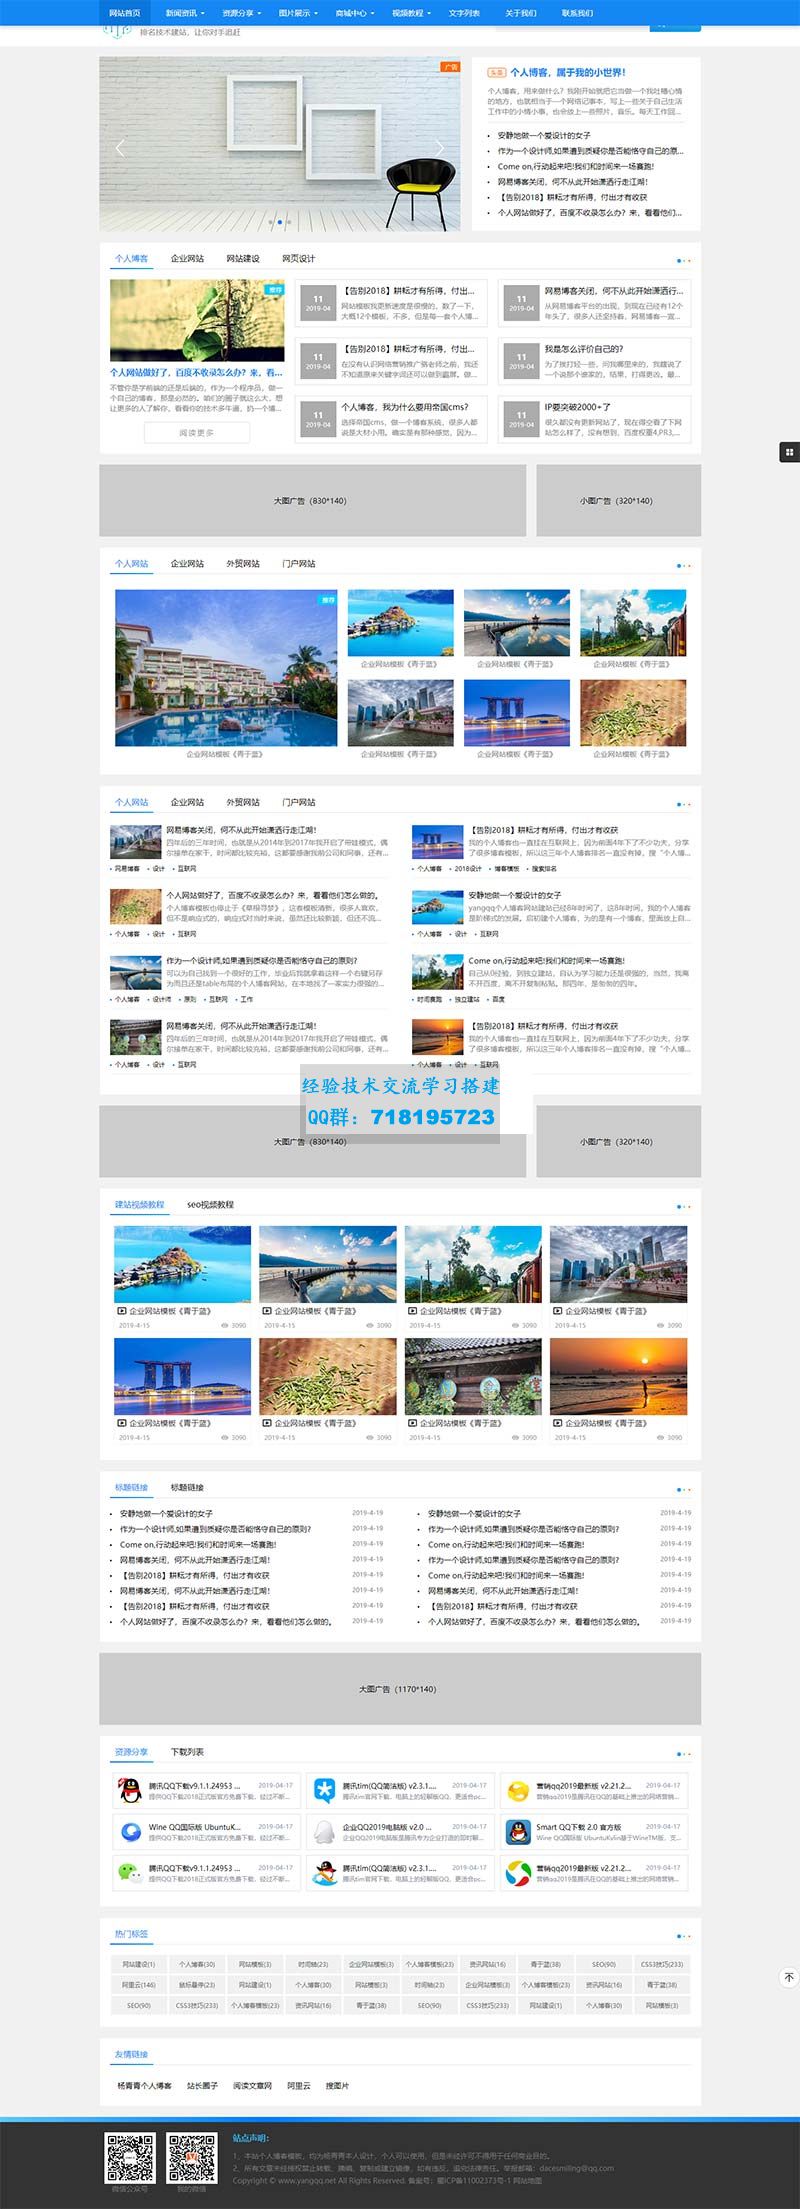     蓝色seo建站技术博客网站模板
